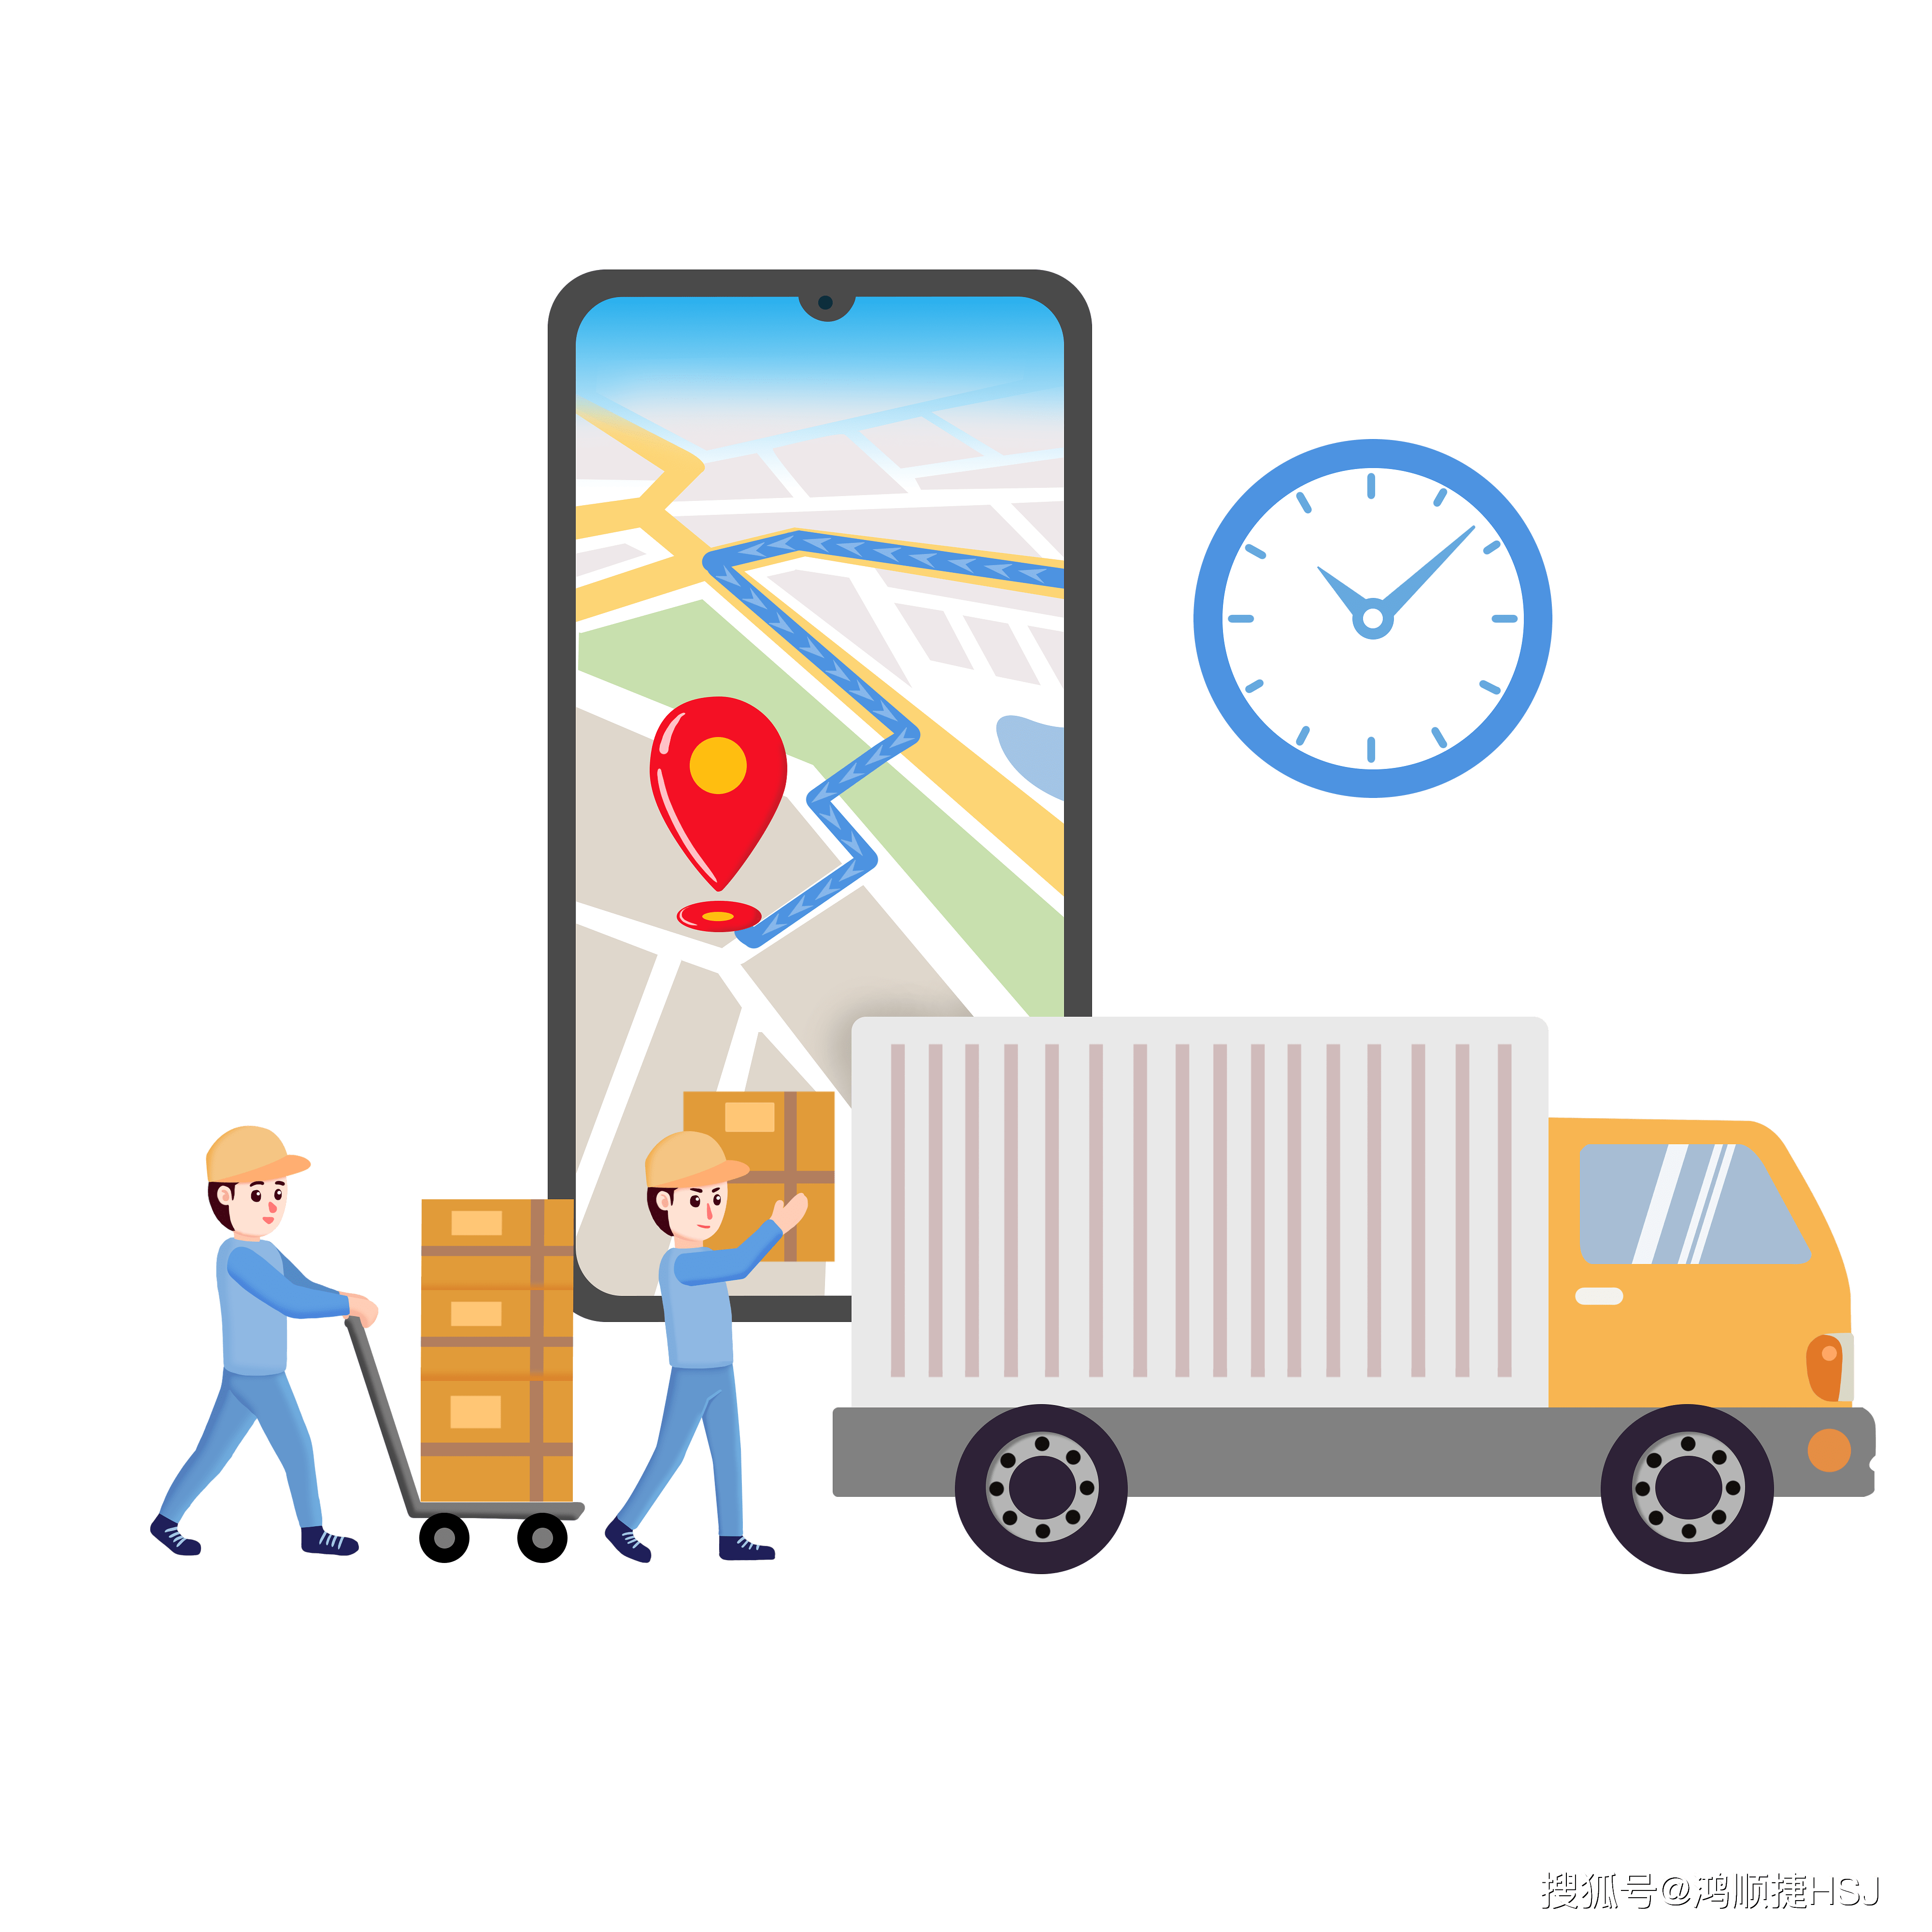 包裹货物运输前需要进行信息采集,人工采集的方式精度不高,效率低下